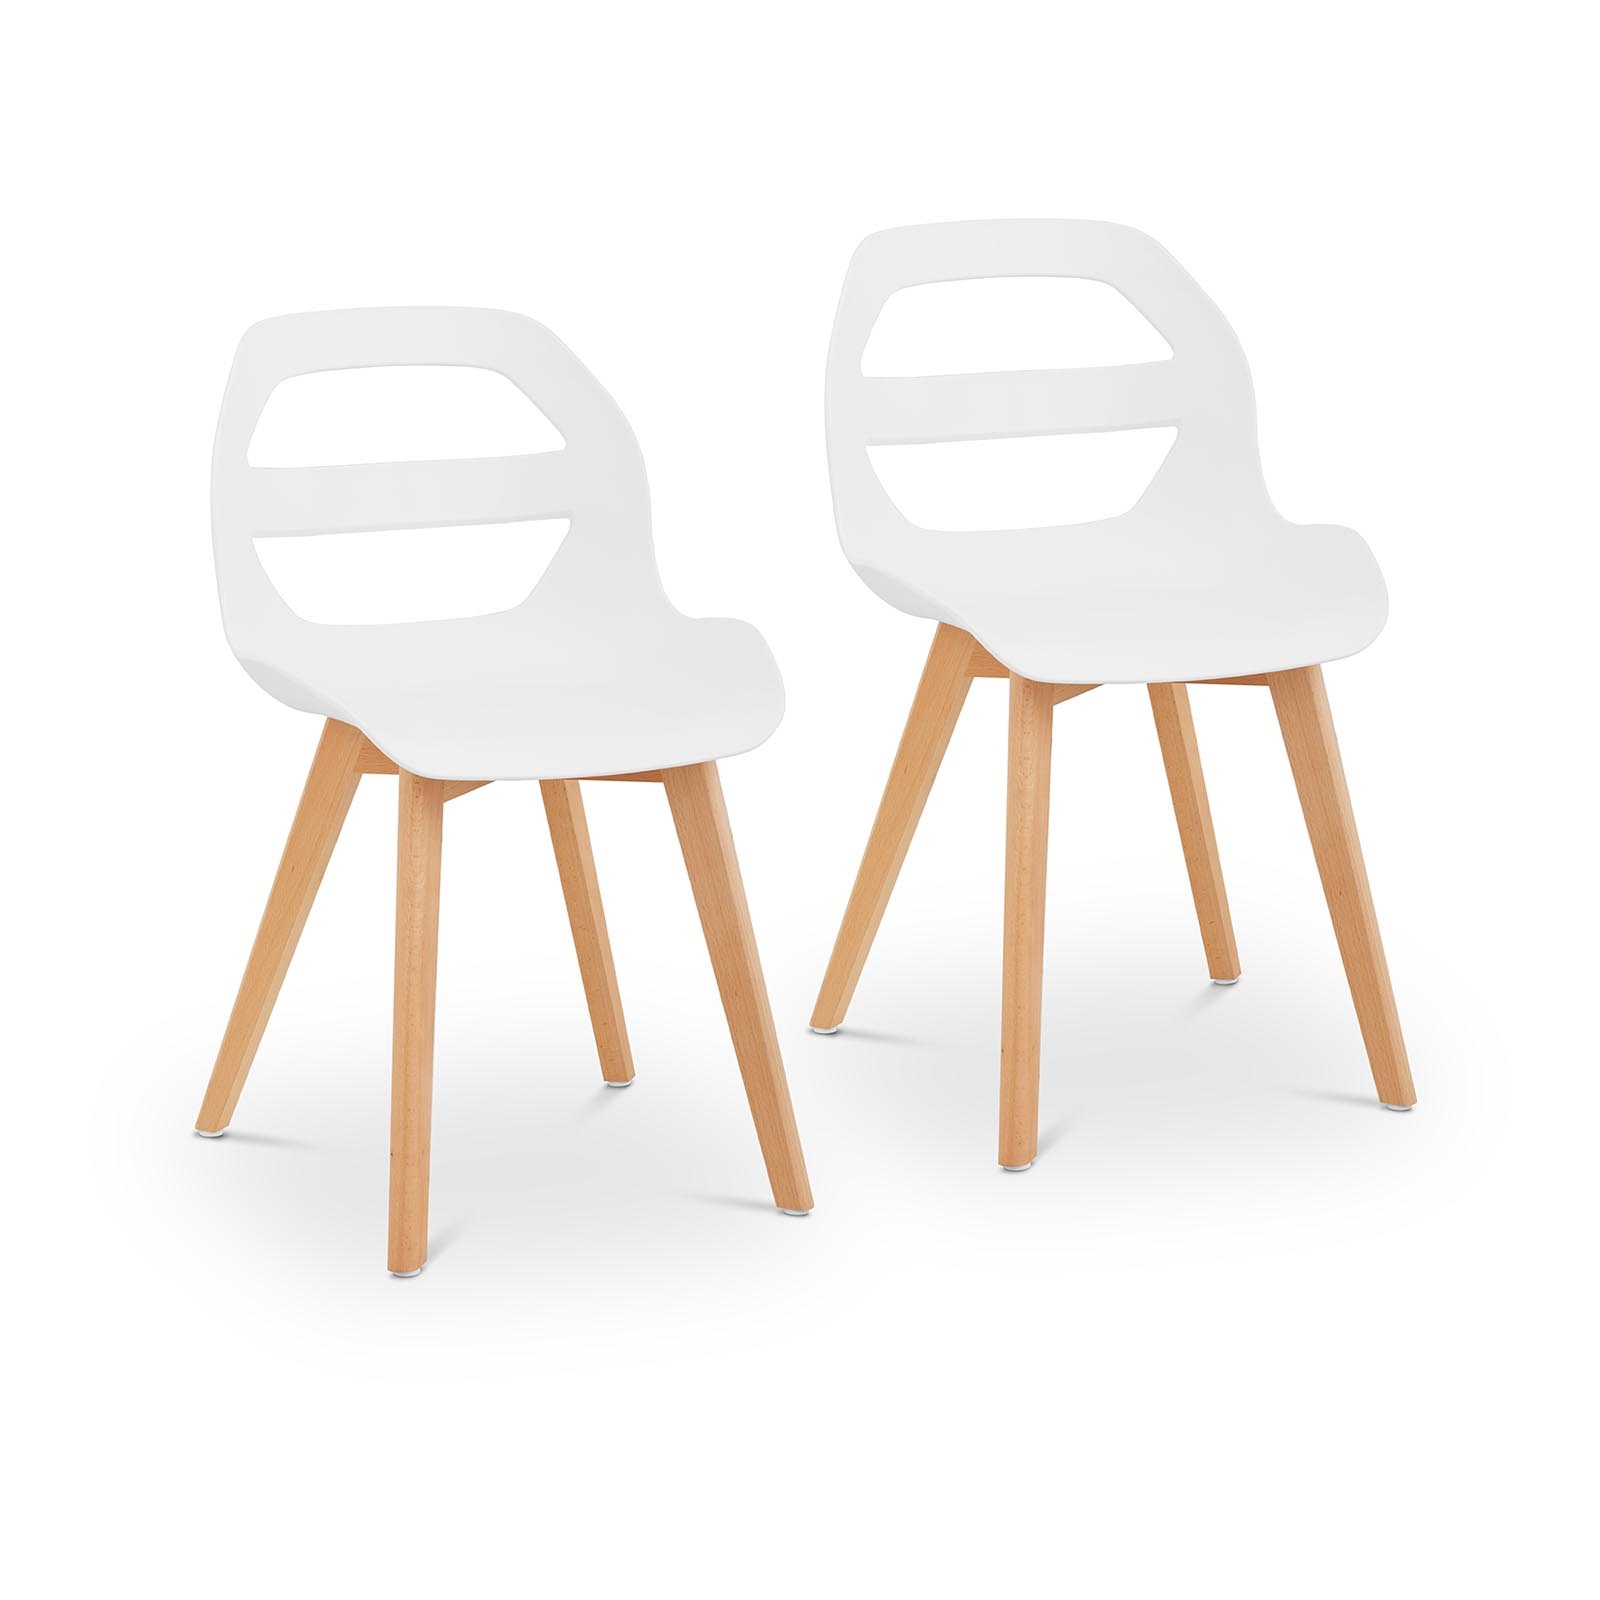 Židle 2dílná sada až 150 kg sedák 40 x 38 cm bílá - Konferenční židle Fromm & Starck